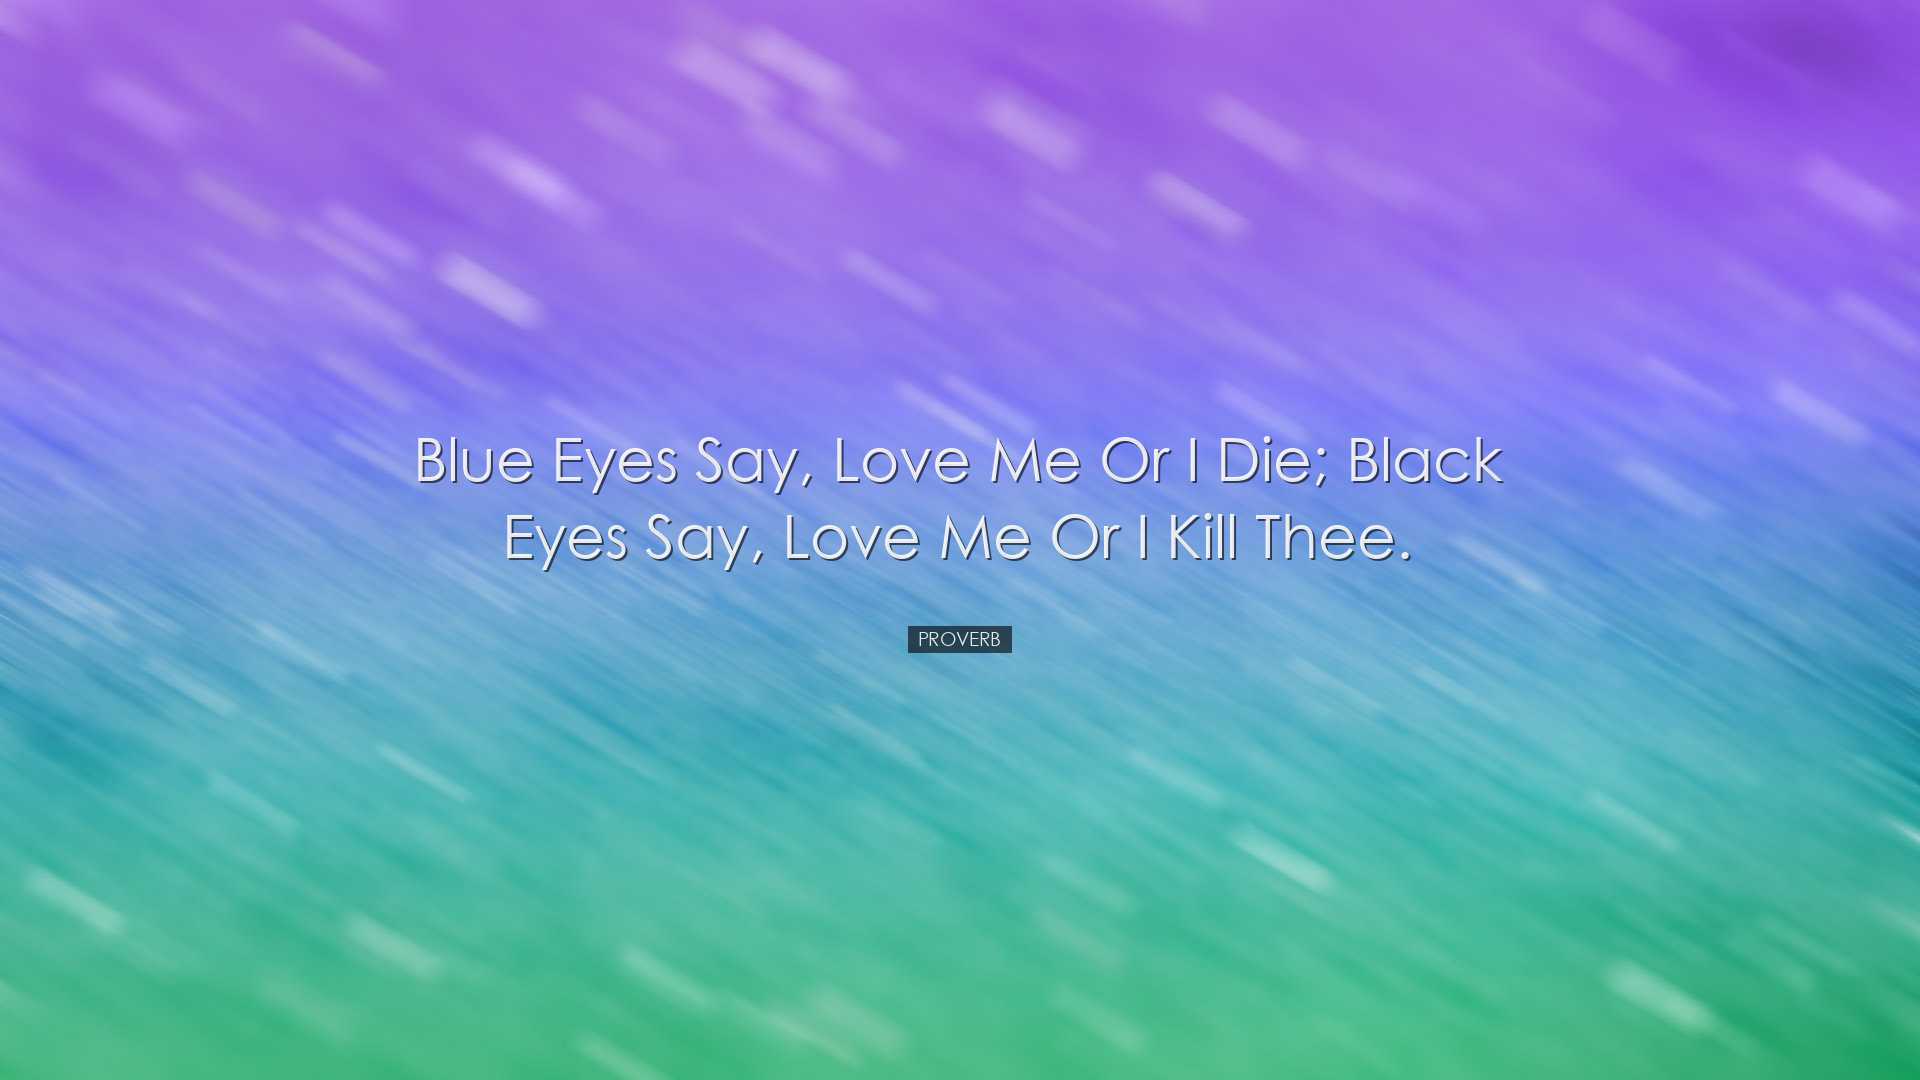 Blue eyes say, Love me or I die; black eyes say, Love me or I kill